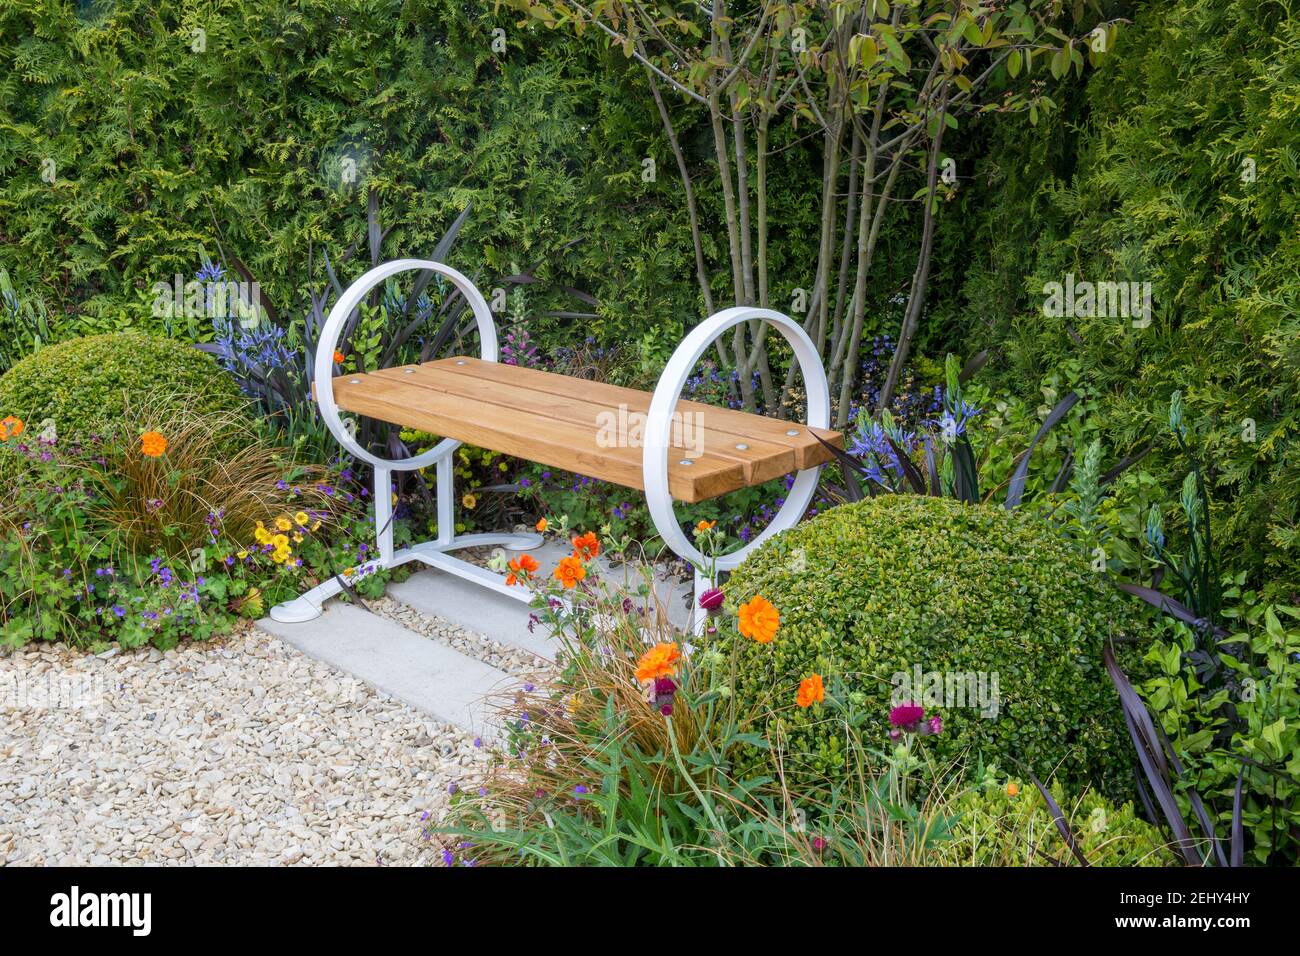 Banc de jardin contemporain en bois avec un chemin de gravier à côté Une frontière avec des boules de boîte - Buxus sempervirens topiary England Printemps GB Banque D'Images